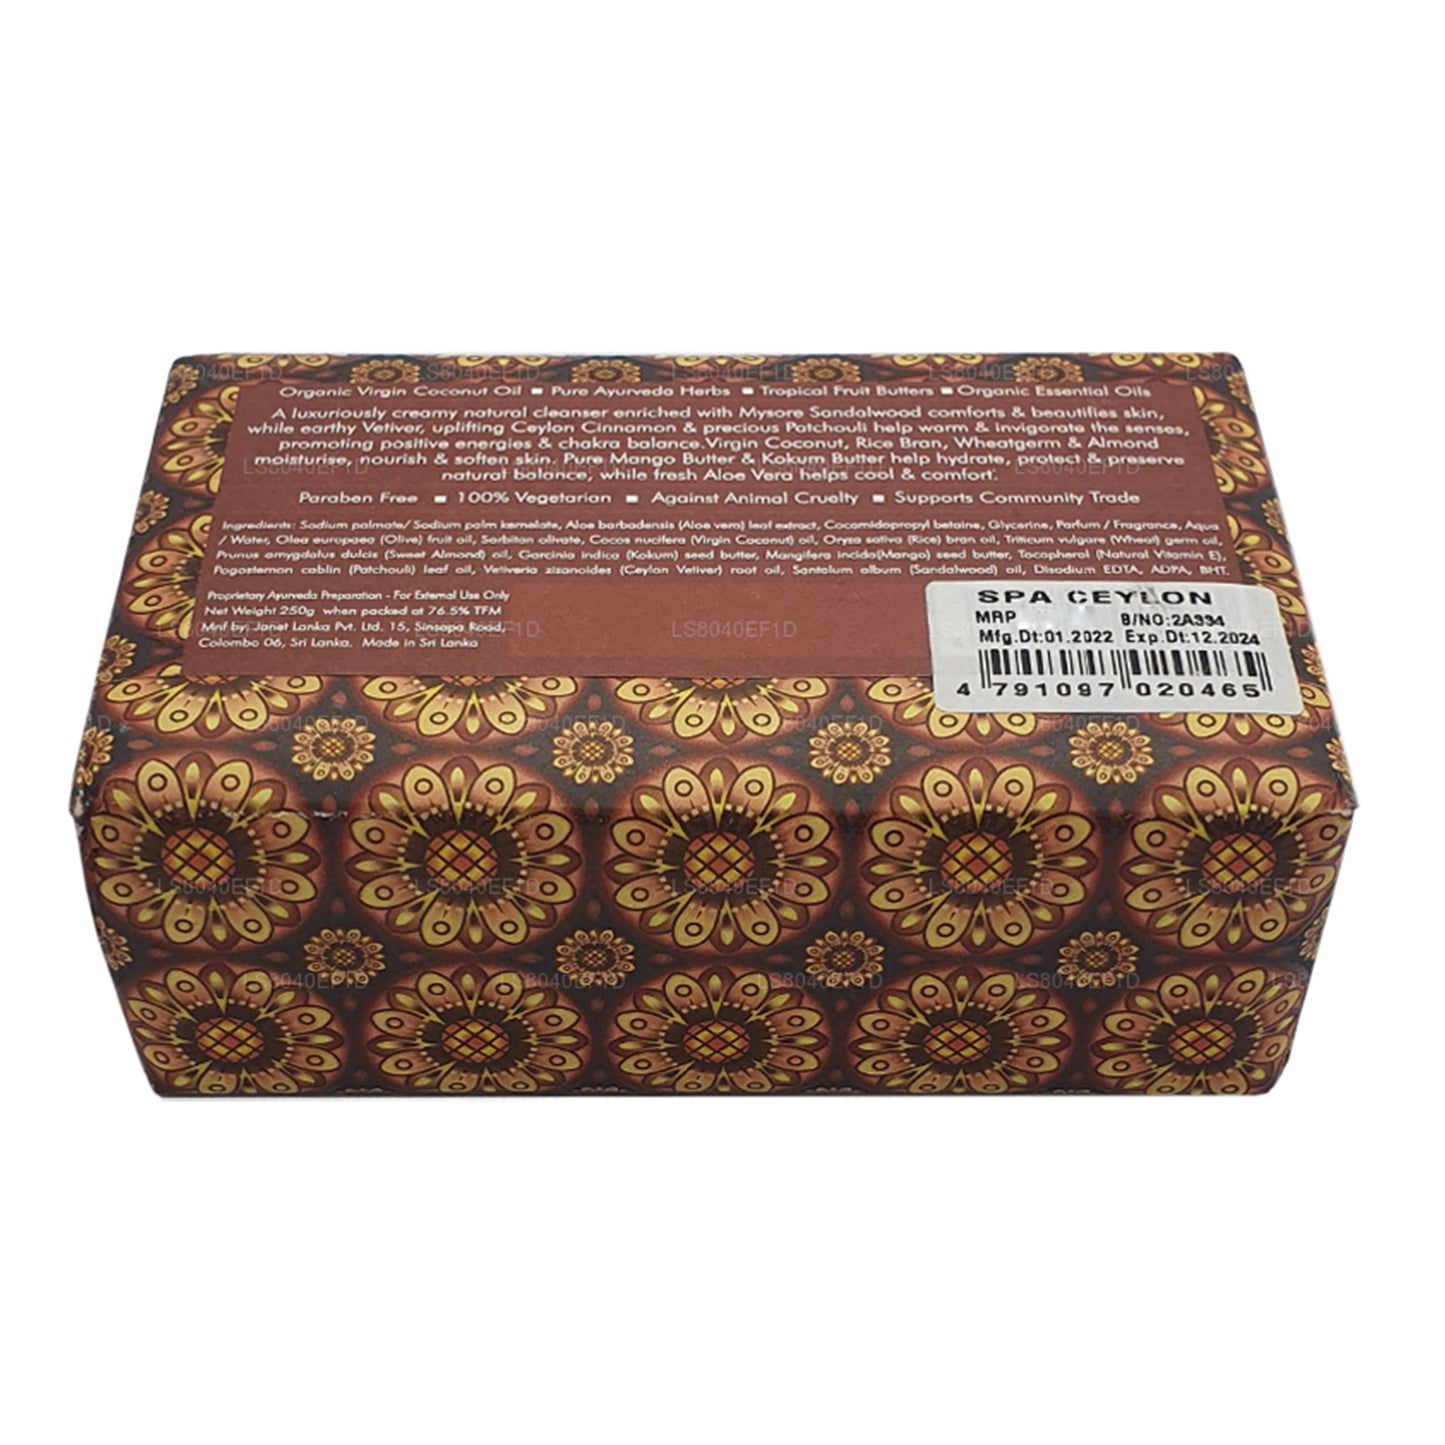 Spa Ceylon Sandalwood Spice luxe zeep (250 g)